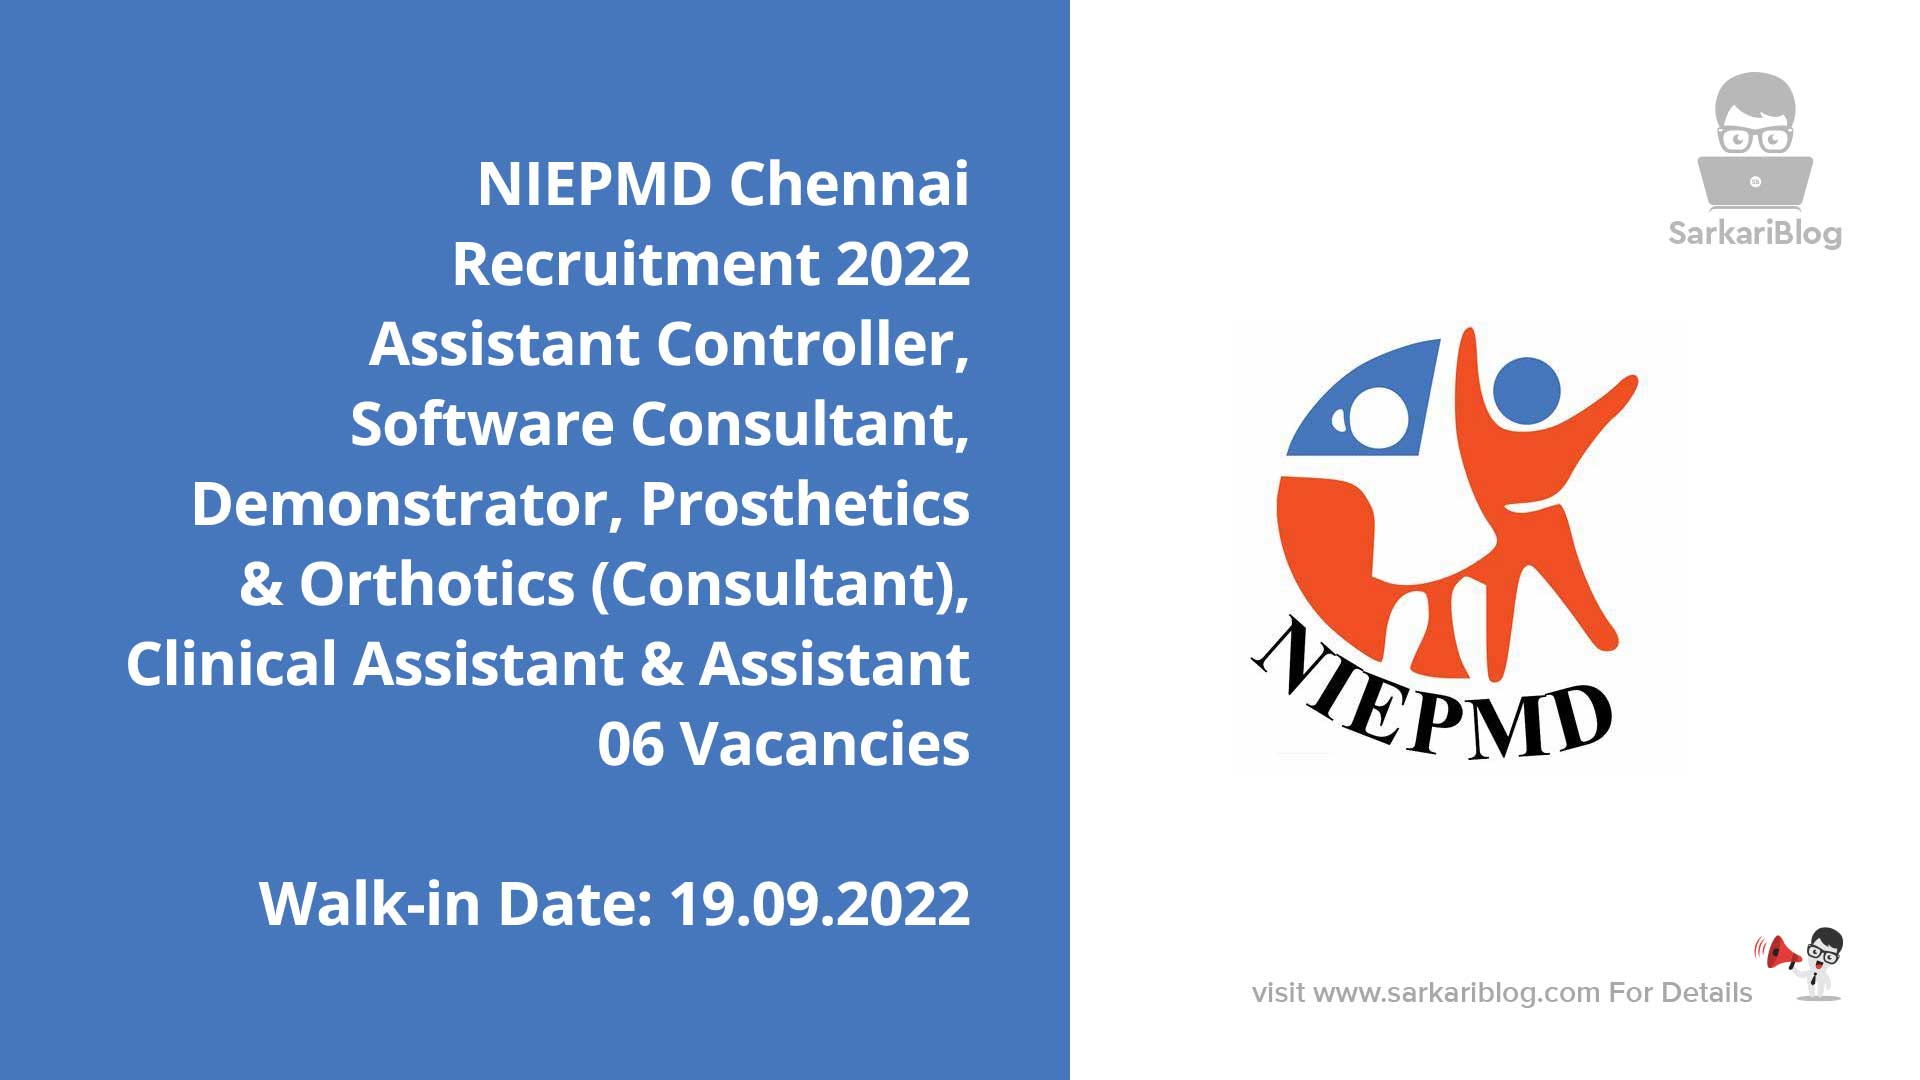 niepmd banner | NIEPMD Chennai Recruitment 2022 - 06 Vacancies - Walk-In & Apply